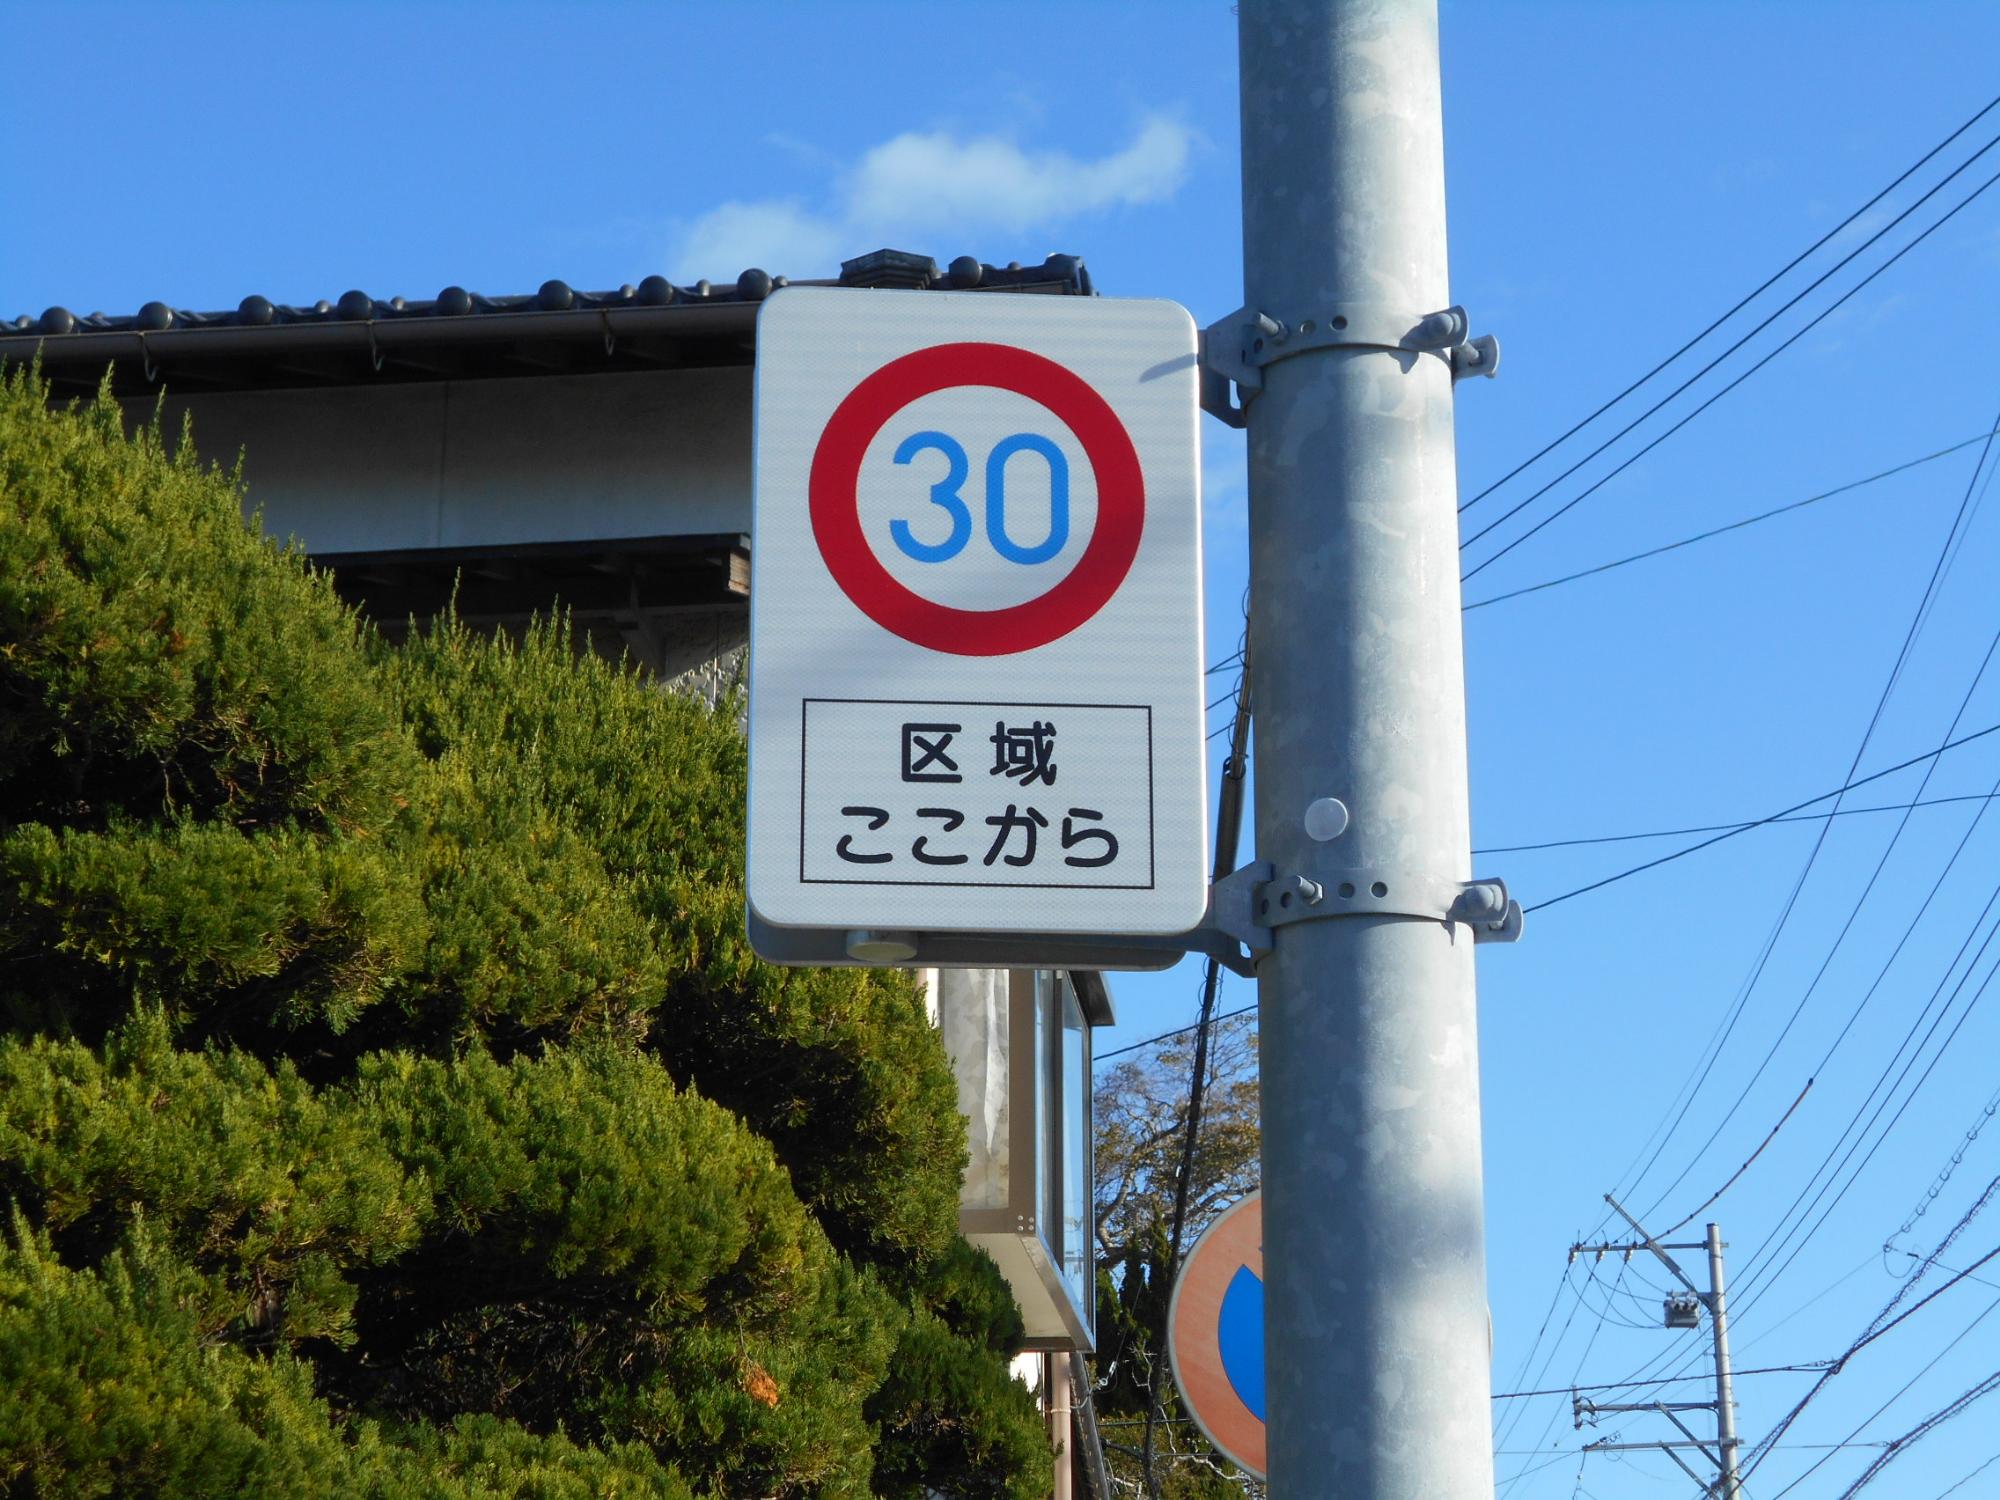 「ゾーン30」を示す道路標識